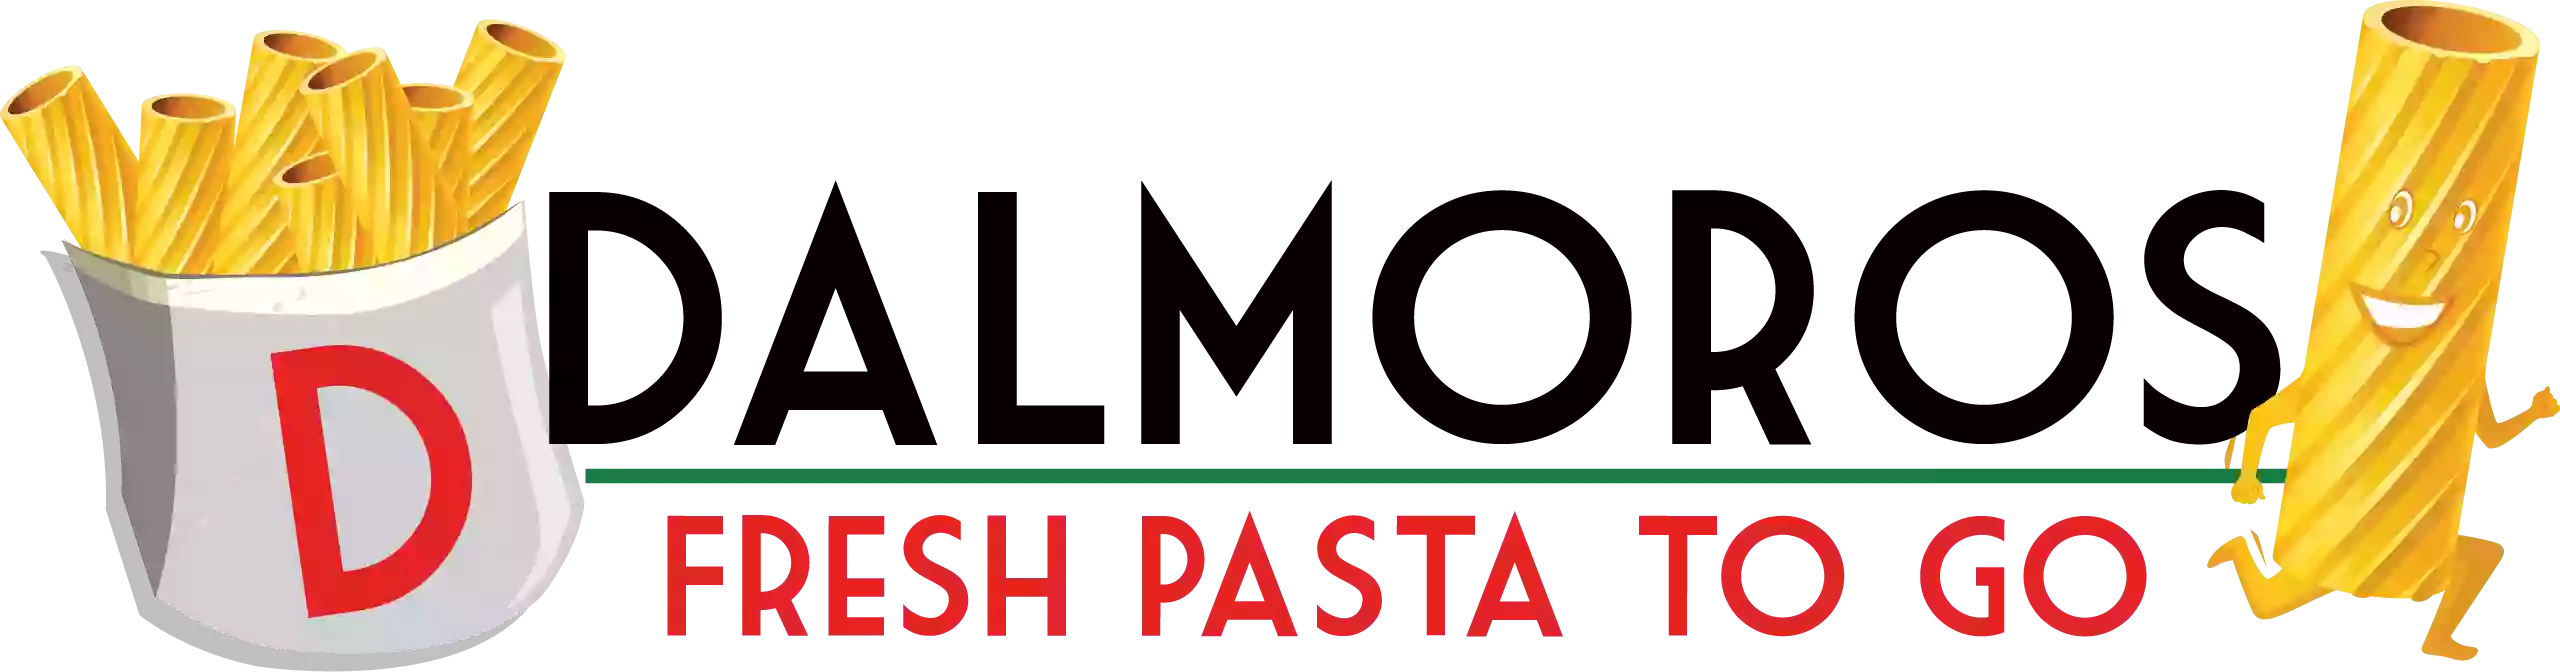 DalMoros Fresh Pasta To Go - Sarasota (FL)